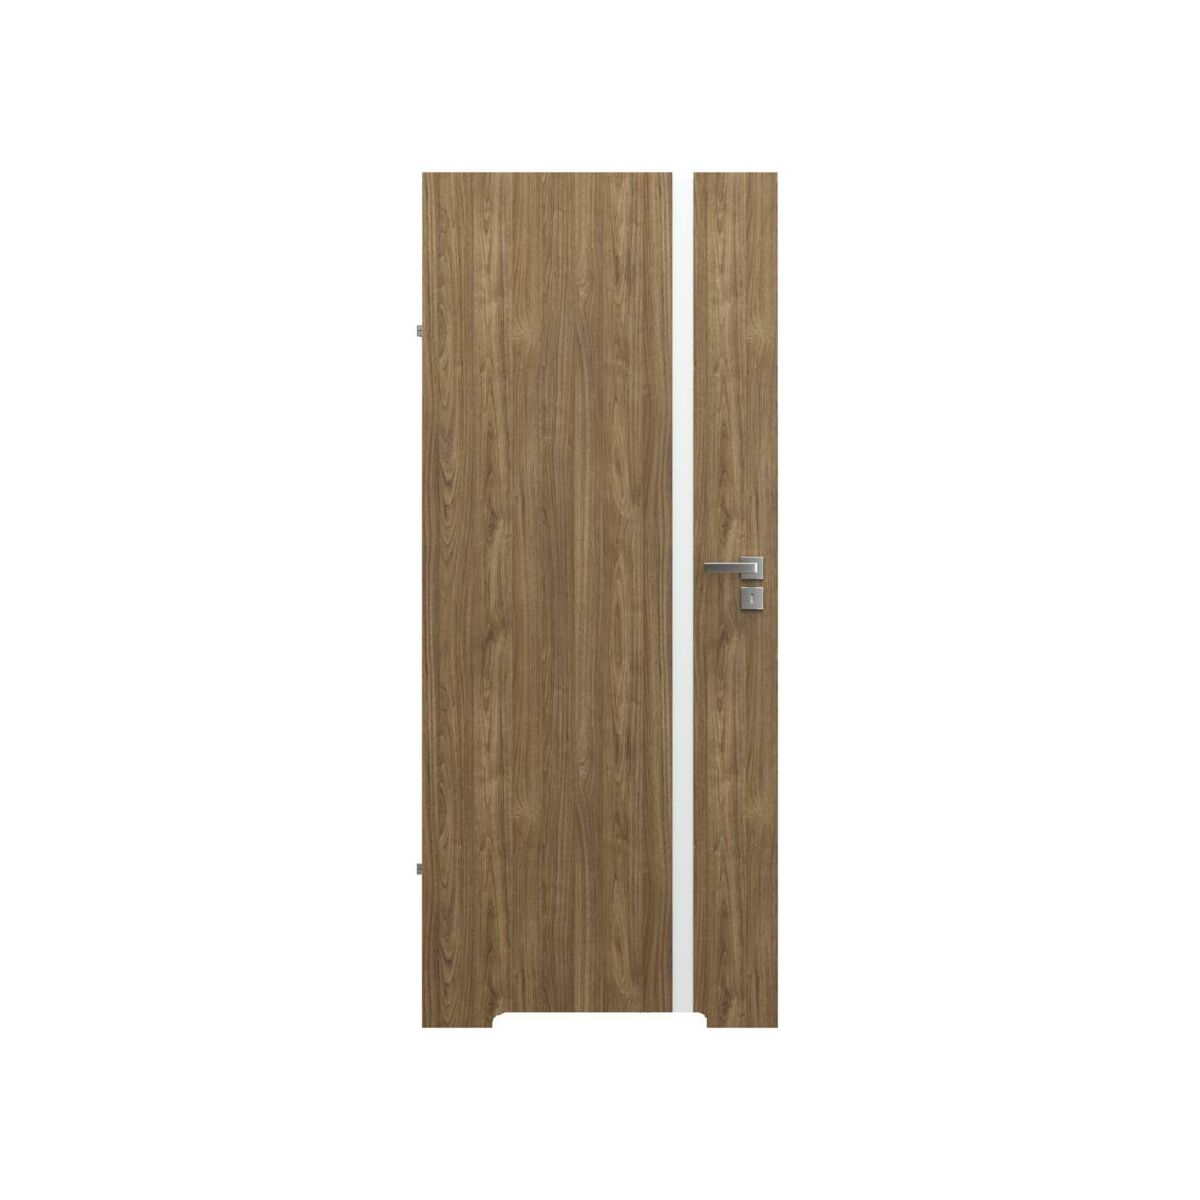 Drzwi wewnętrzne łazienkowe z podcięciem wentylacyjnym bezprzylgowe Focus 4A Orzech naturalny 80 Lewe Porta